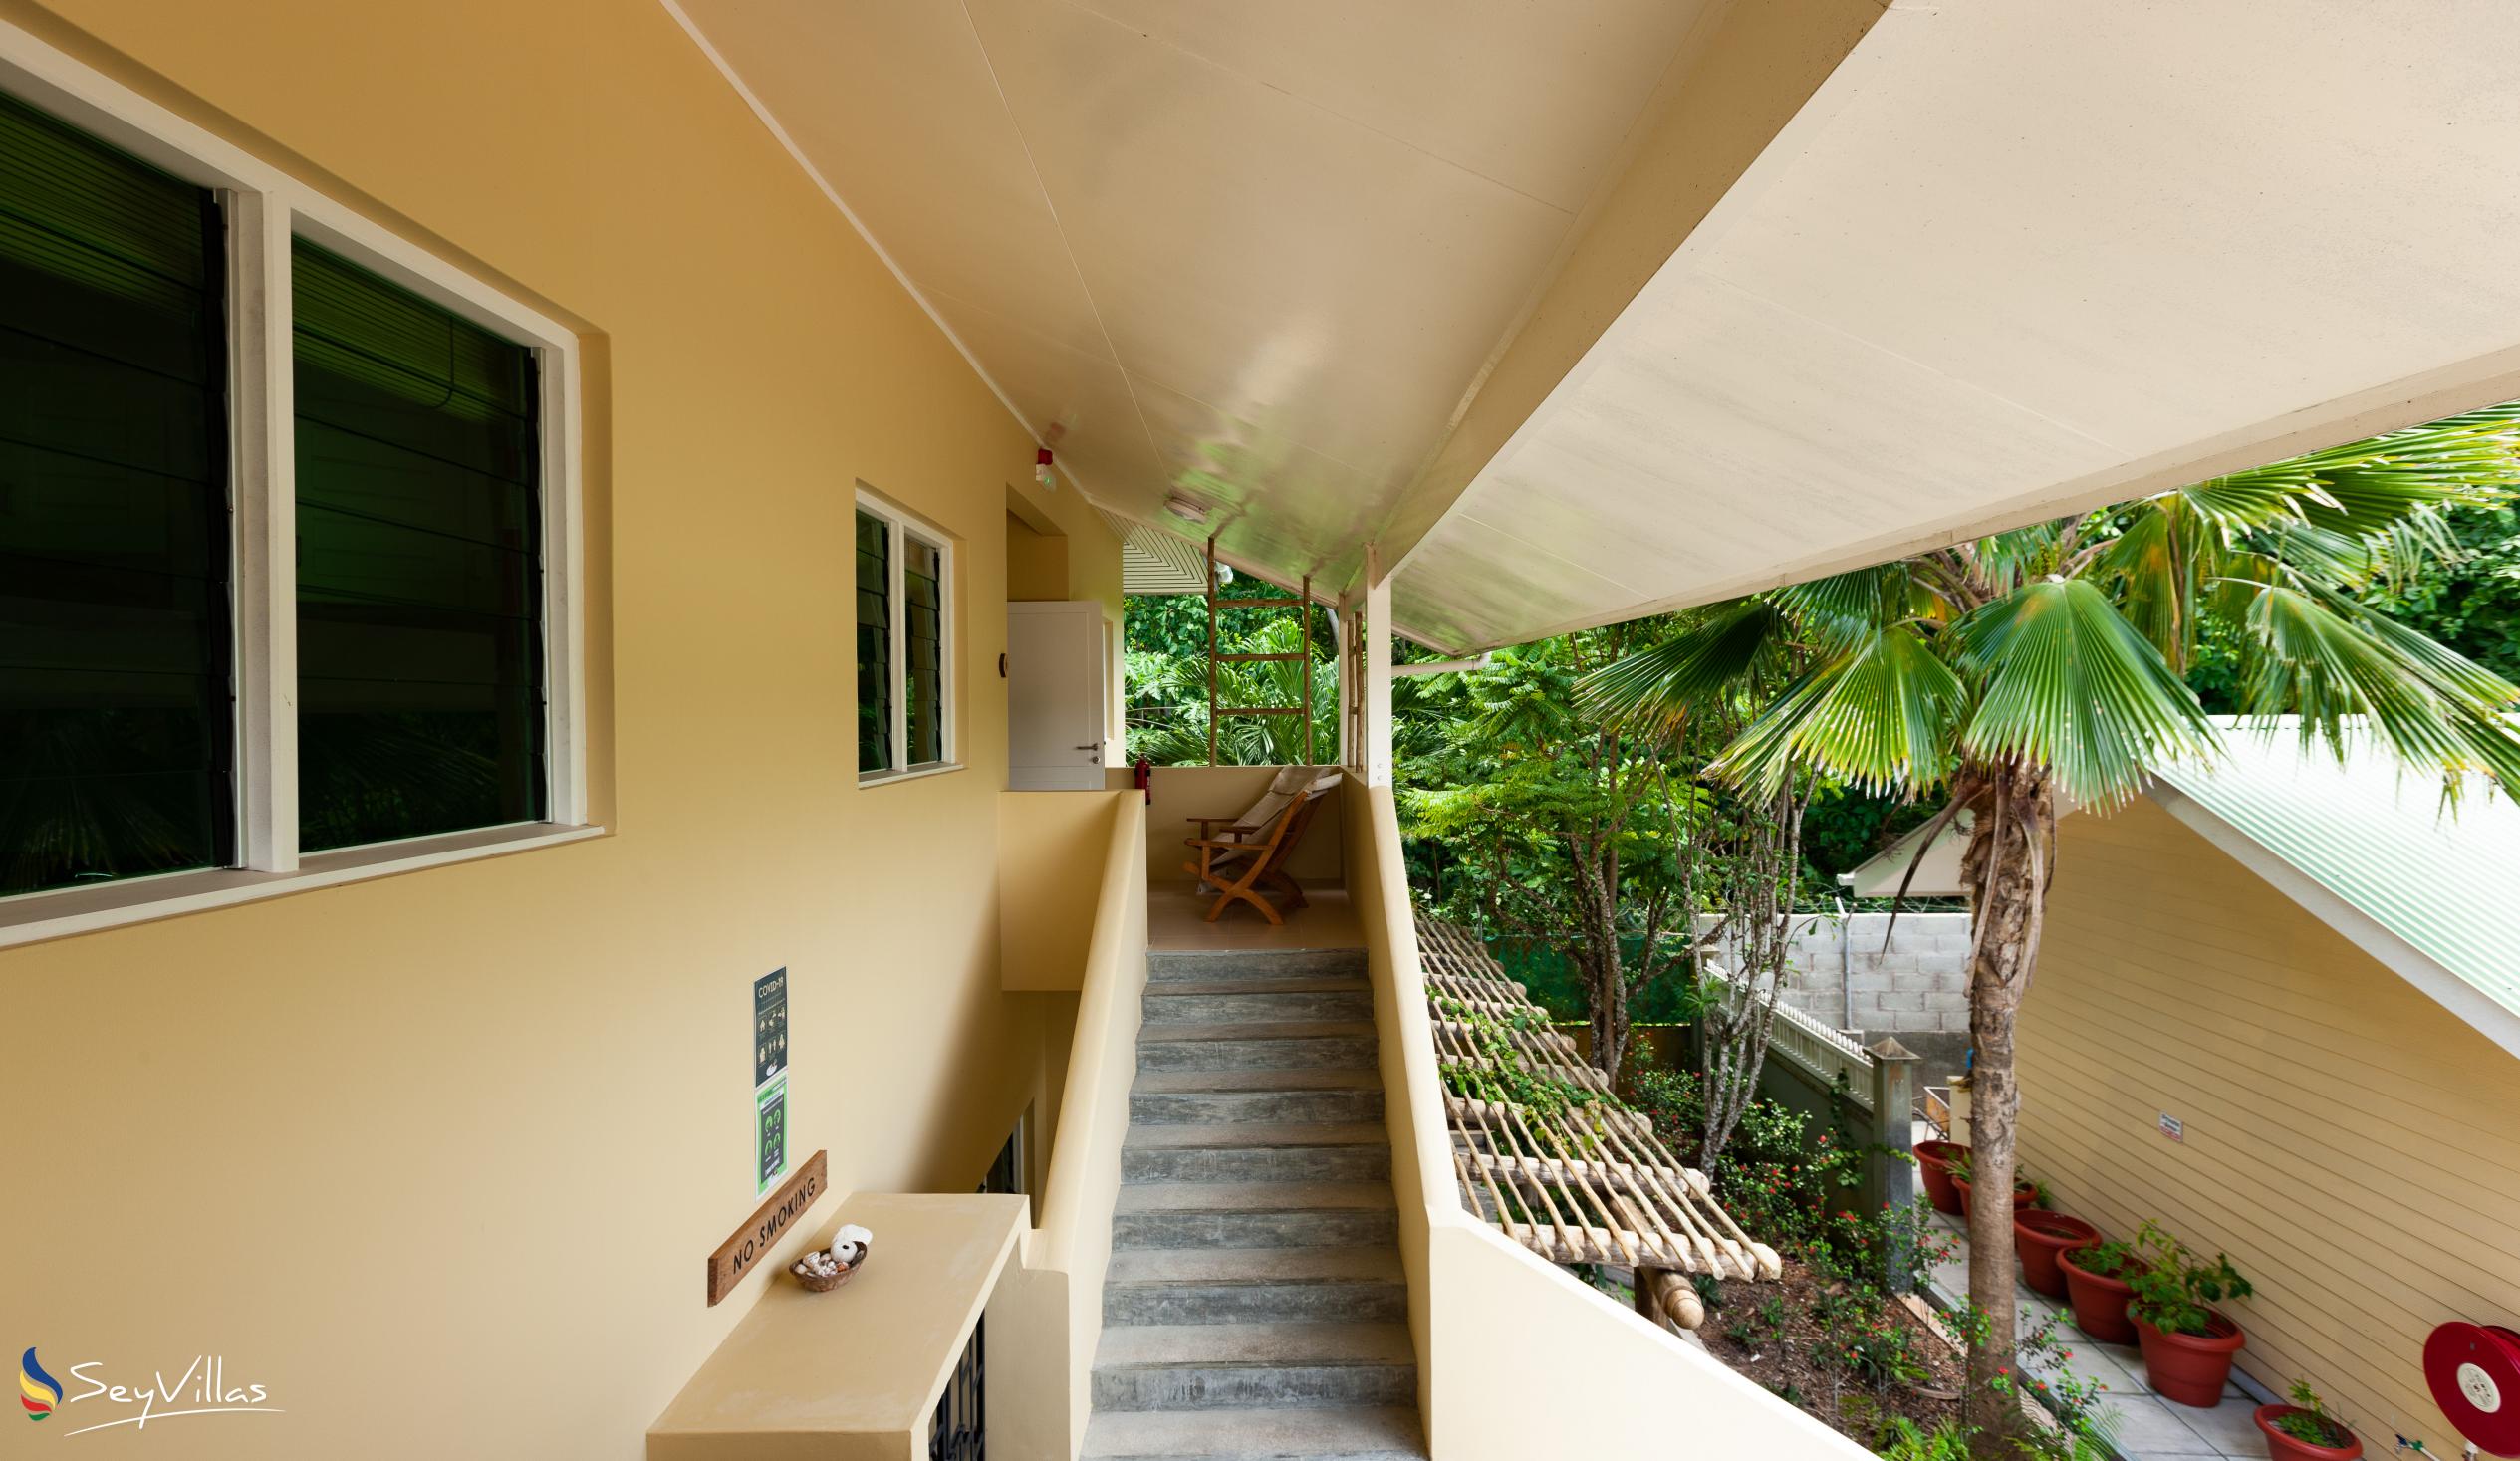 Foto 56: Residence Praslinoise - Ferienstudio (Obergeschoss) - Praslin (Seychellen)